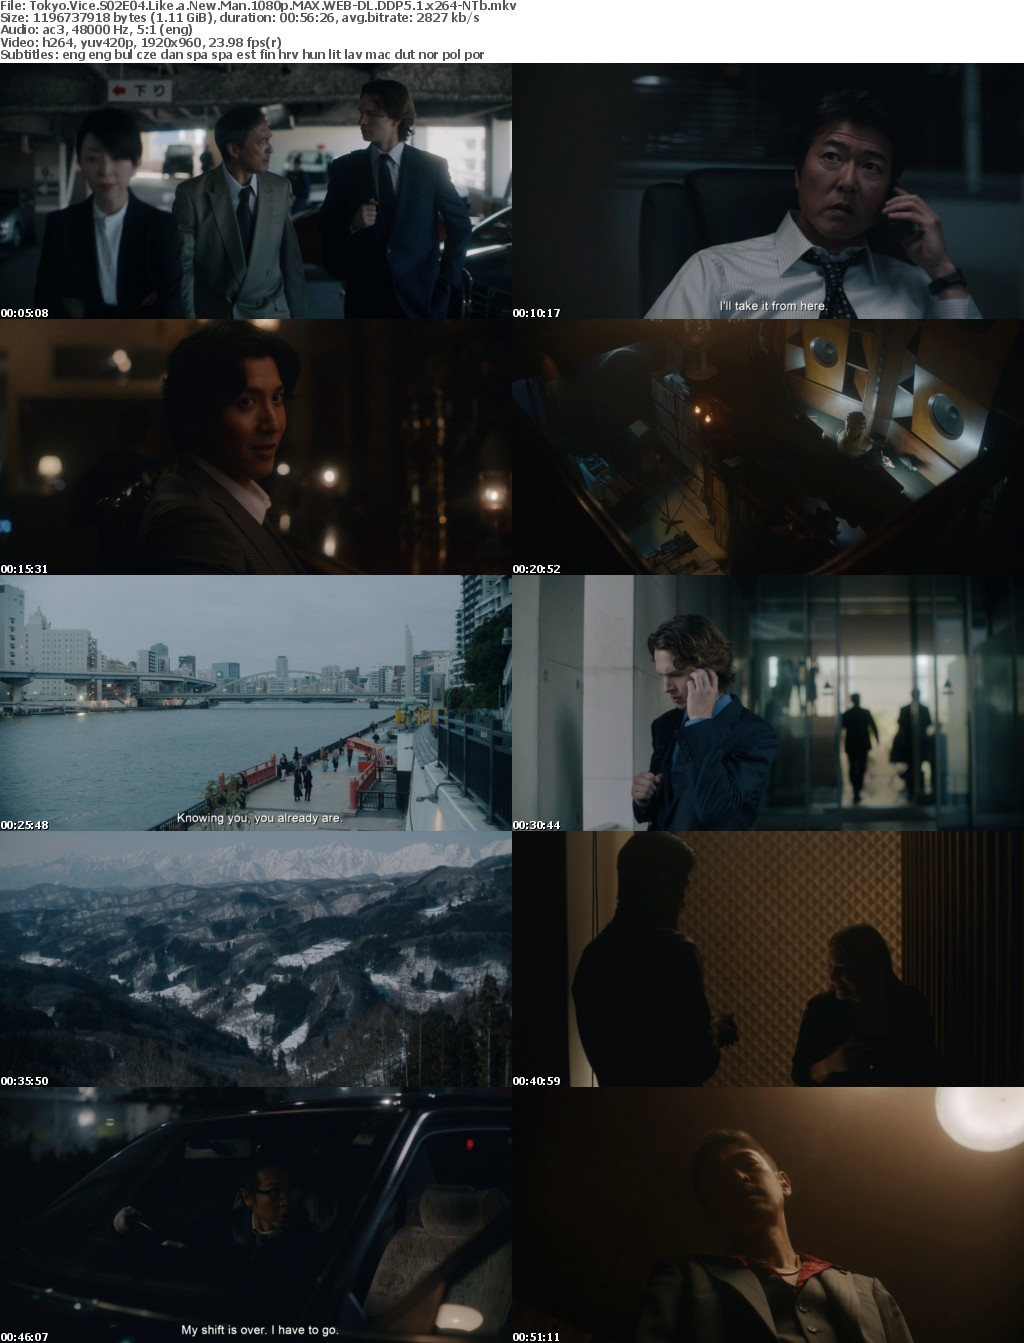 Tokyo Vice S02E04 Like a New Man 1080p MAX WEB-DL DDP5 1 x264-NTb